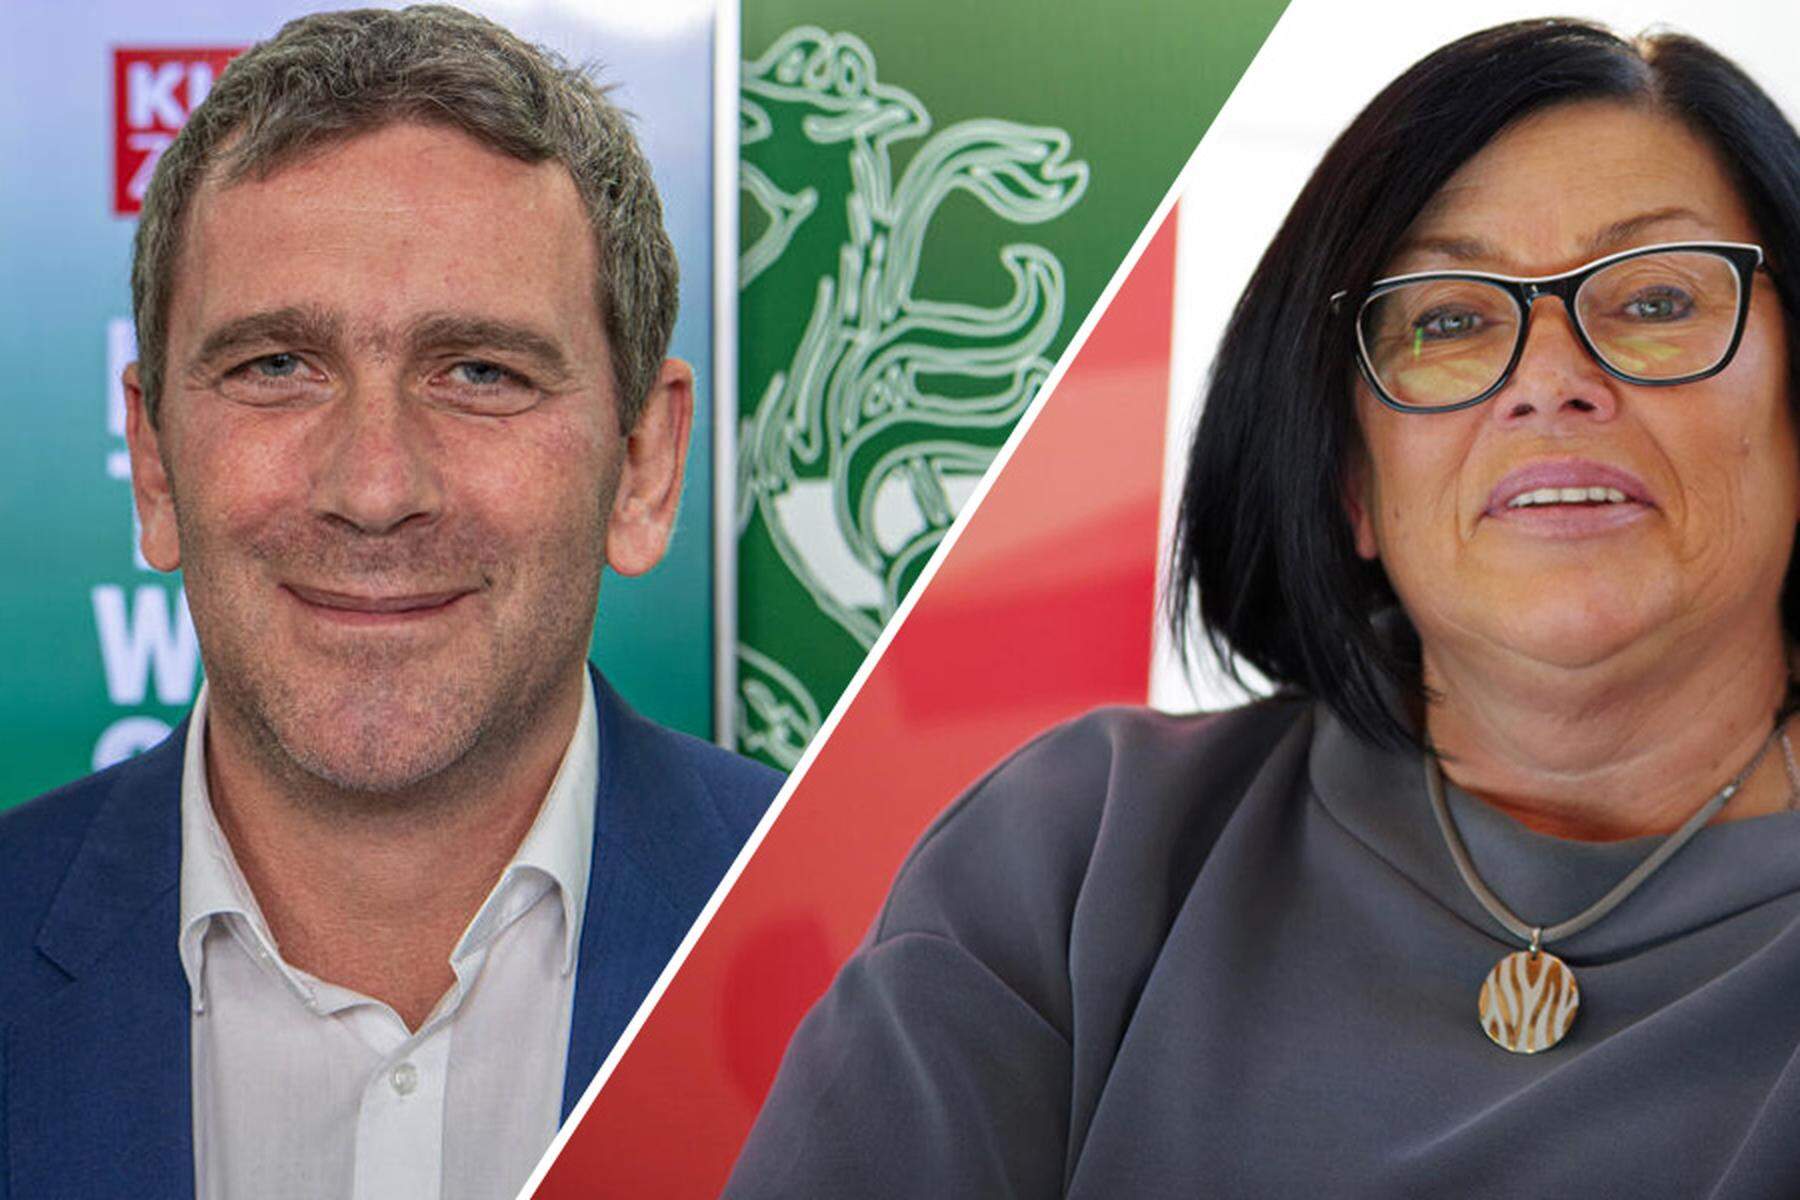 Politik Intern: Zwei neue Abgeordnete aus dem Mürztal: Die Frage ist, für wie lange